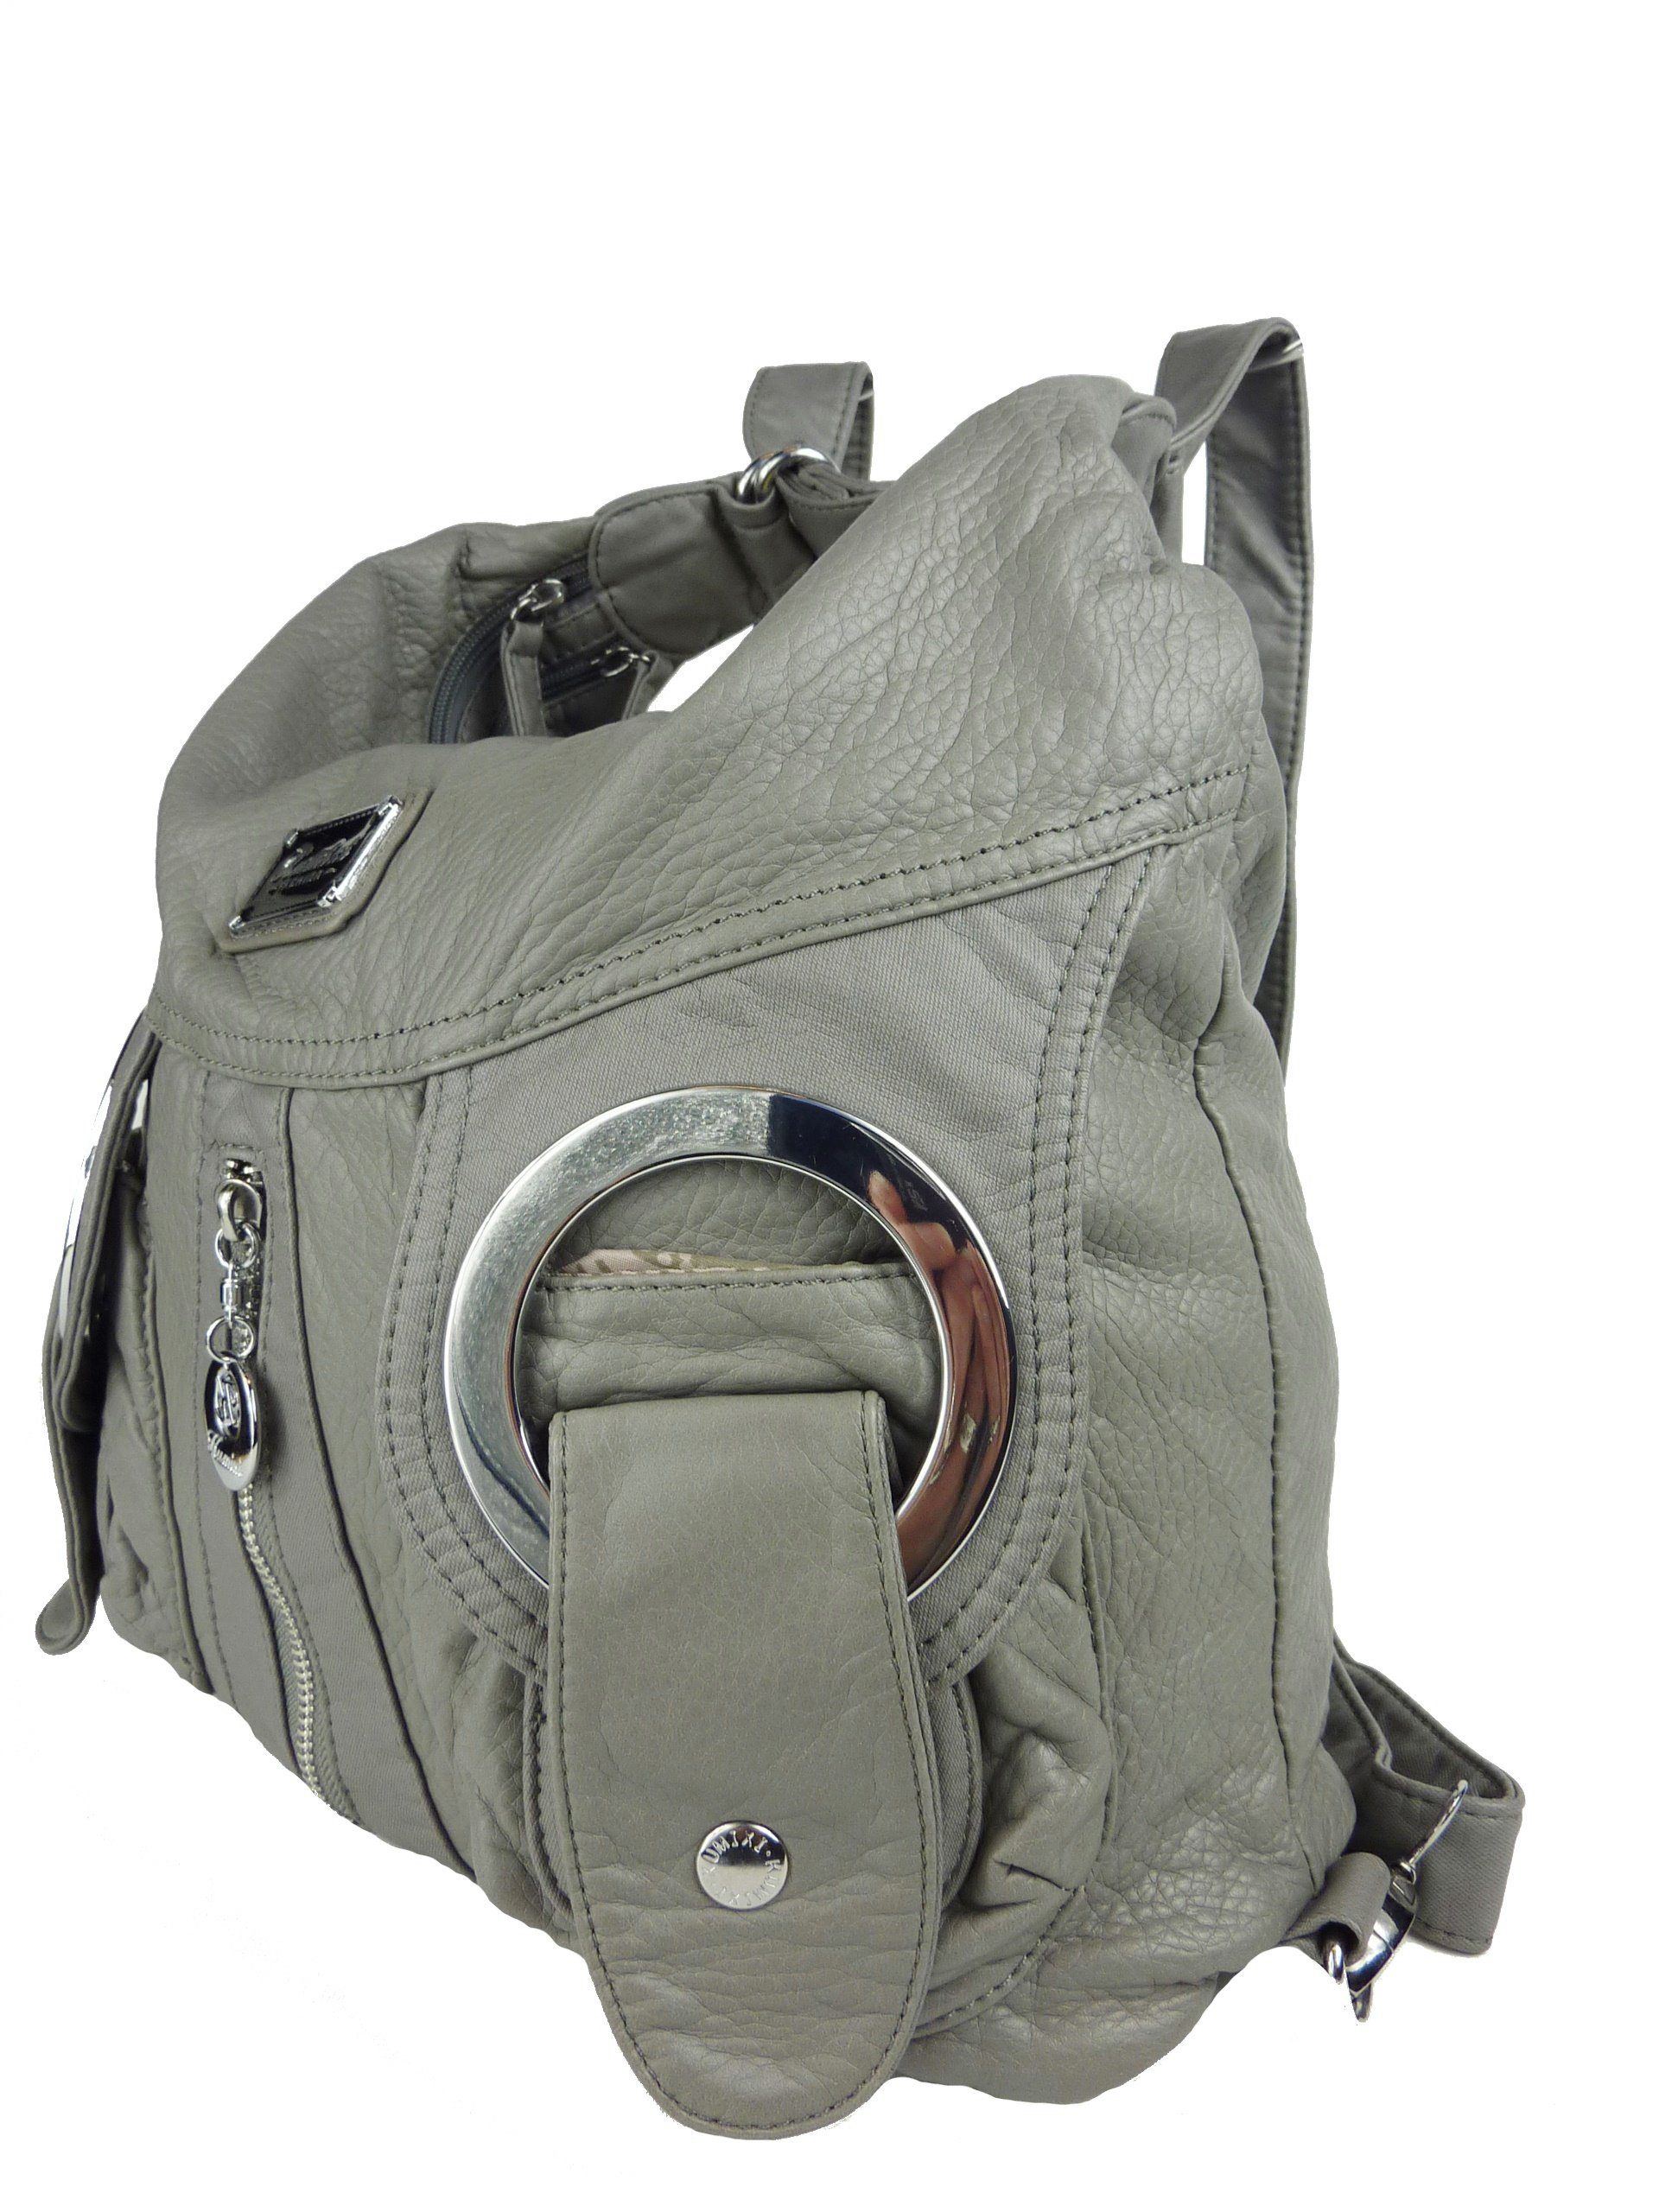 Taschen4life Schultertasche Rucksacktasche W6802 Multifunktionstasche, Tasche oder Rucksack, verstellbarer Schulterriemen, als Schultertasche oder Rucksack tragbar grau | Schultertaschen